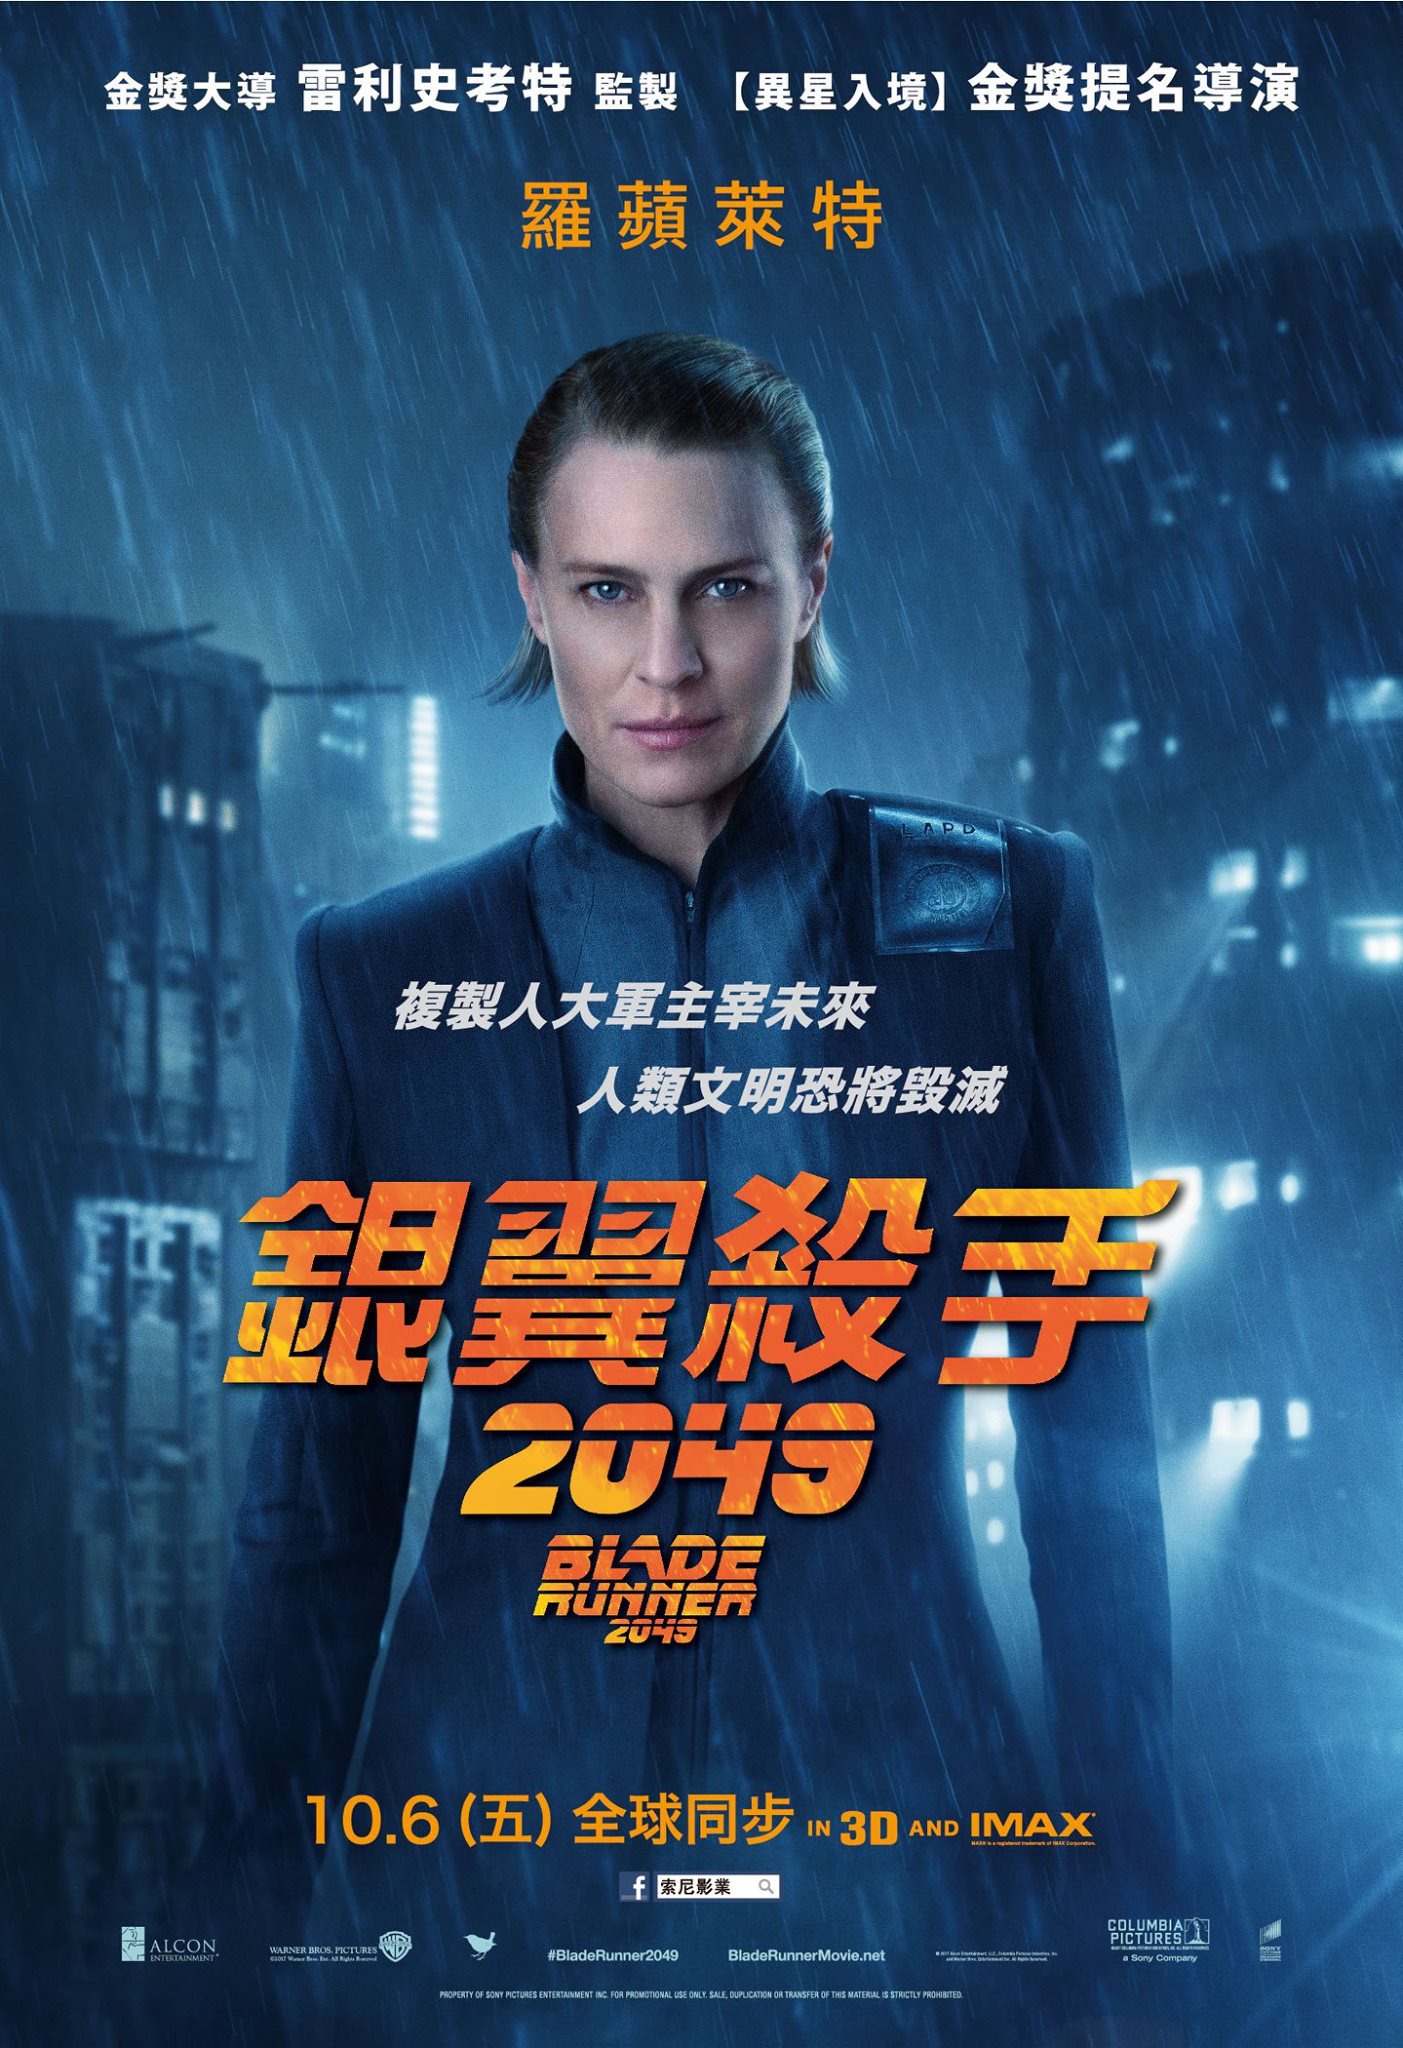 Mega Sized Movie Poster Image for Blade Runner 2049 (#15 of 32)